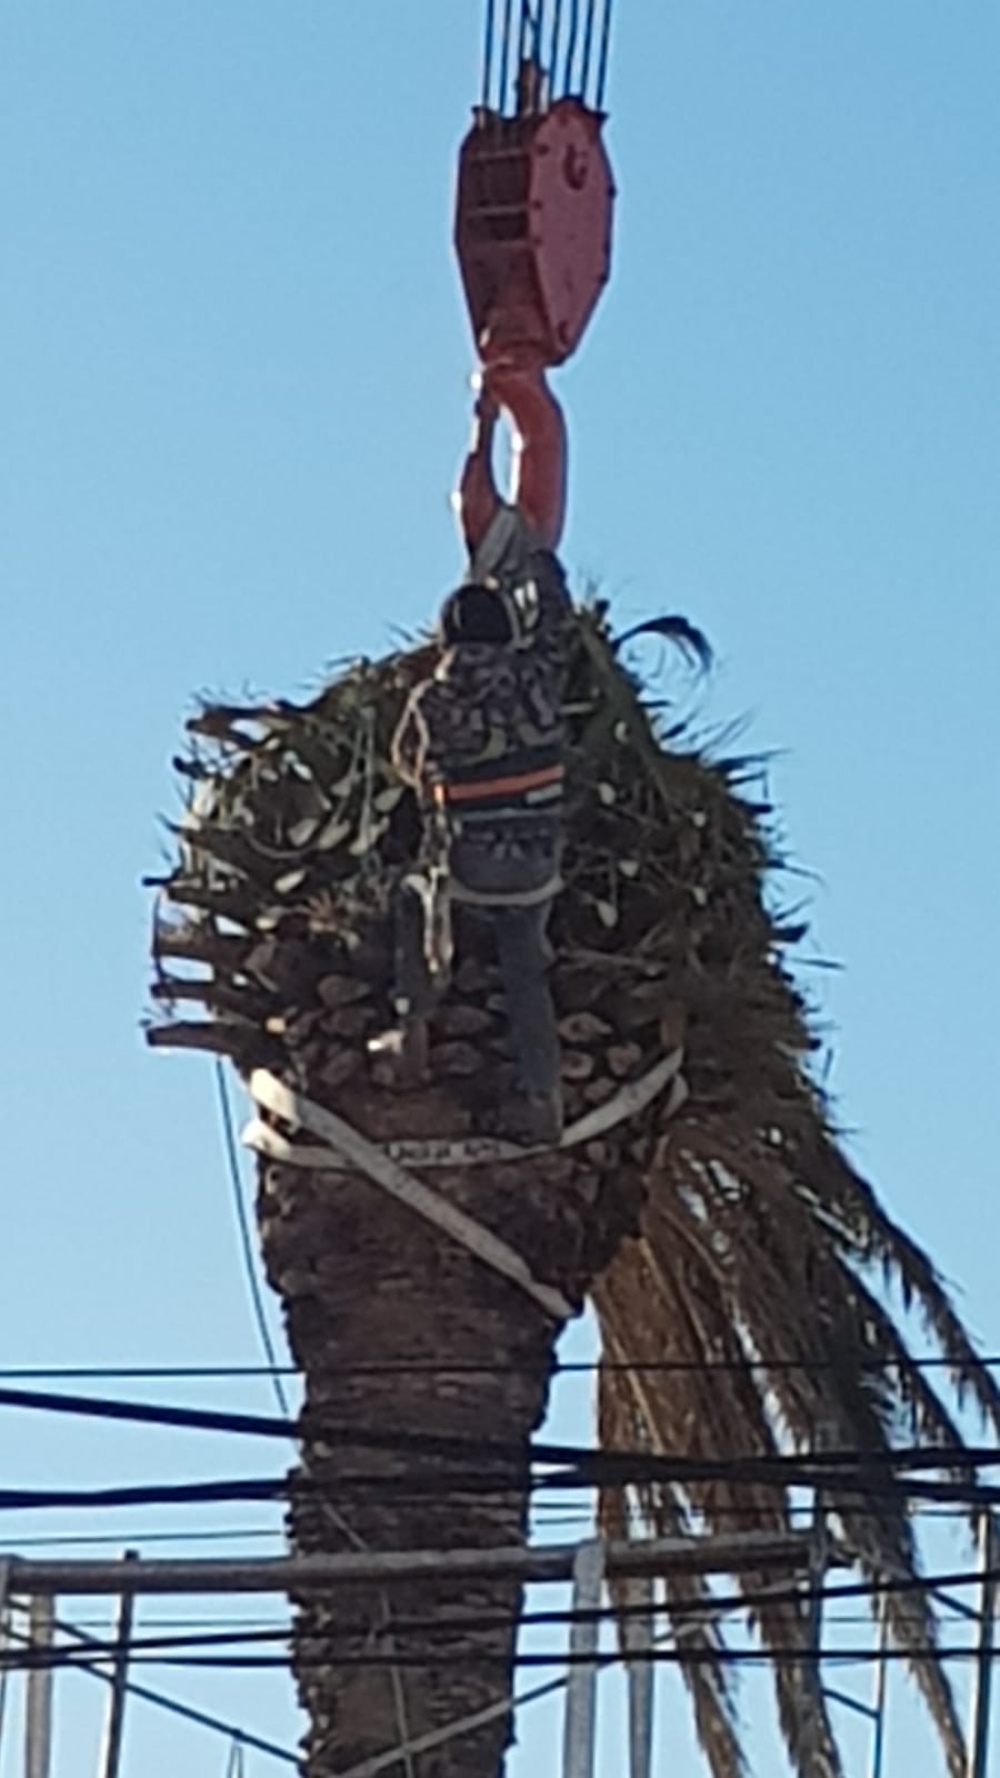 Sacaron una palmera gigante de un domicilio en calle Pellegrini